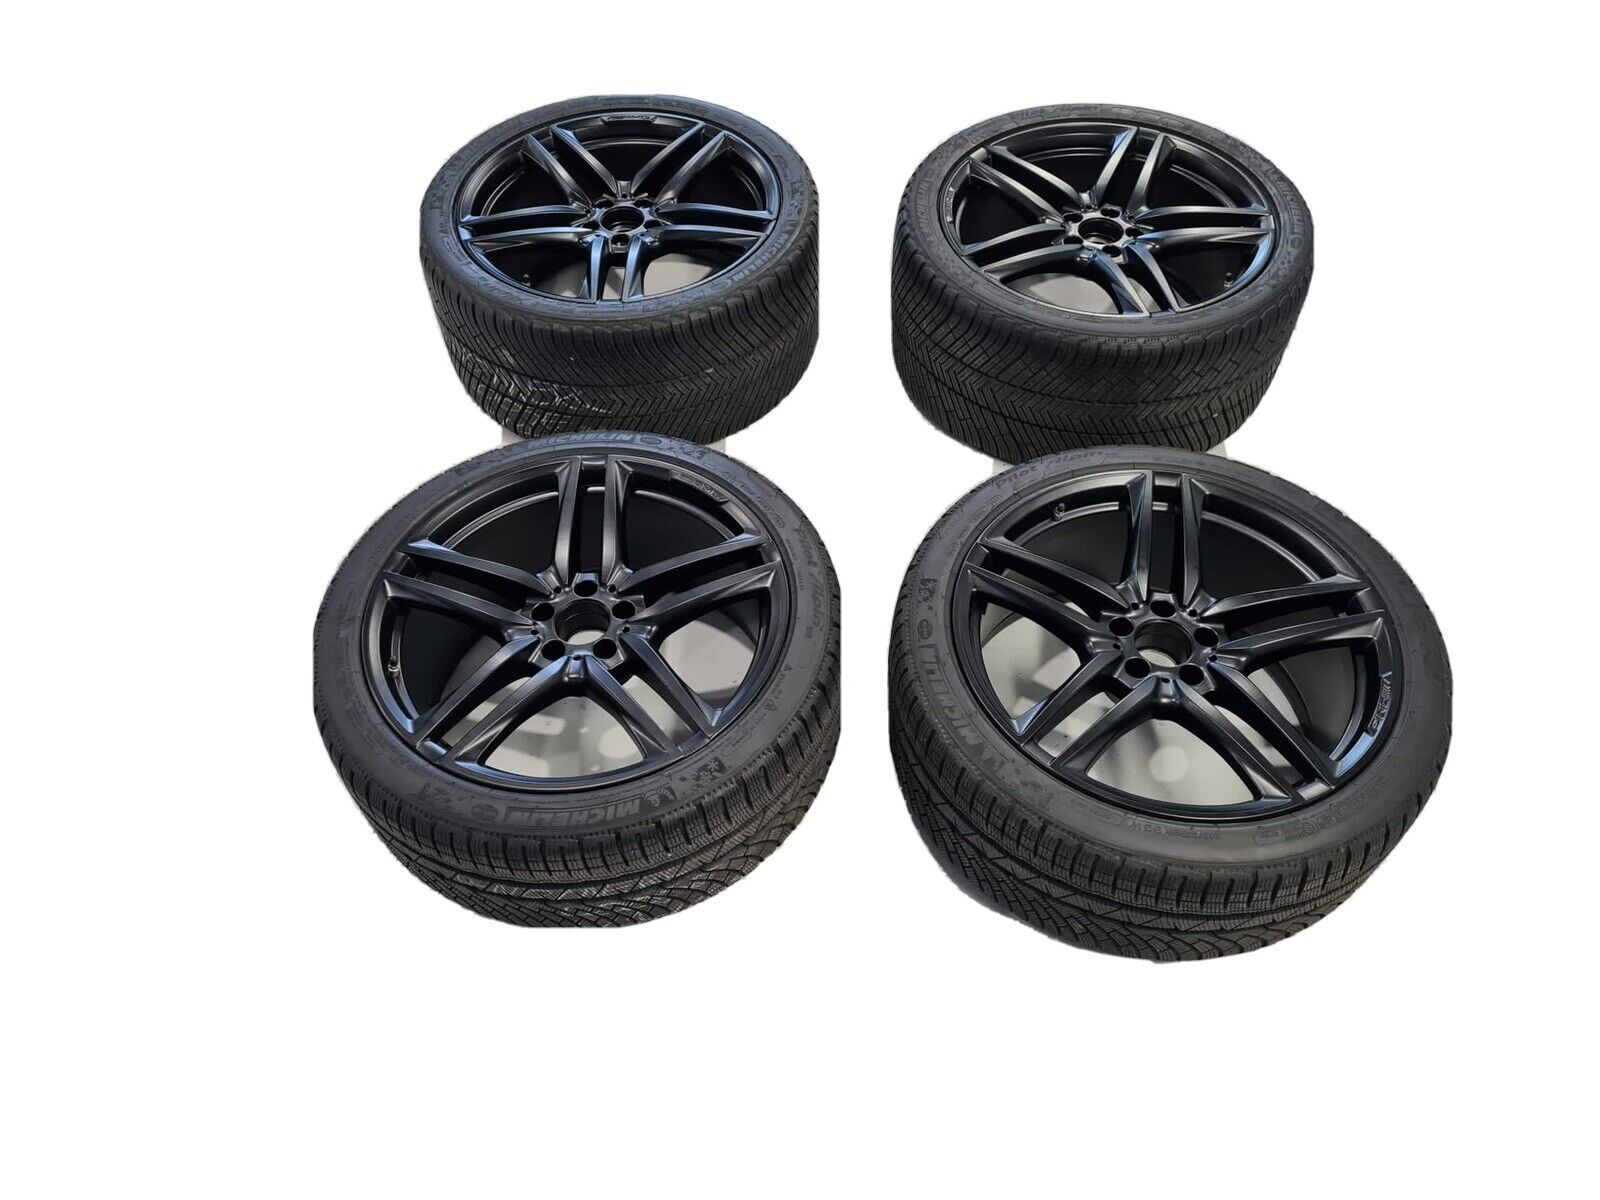 Genuine E63 AMG 5 Twin Spoke W213 Wheels - Michelin Alpin Winter Tyres 20”